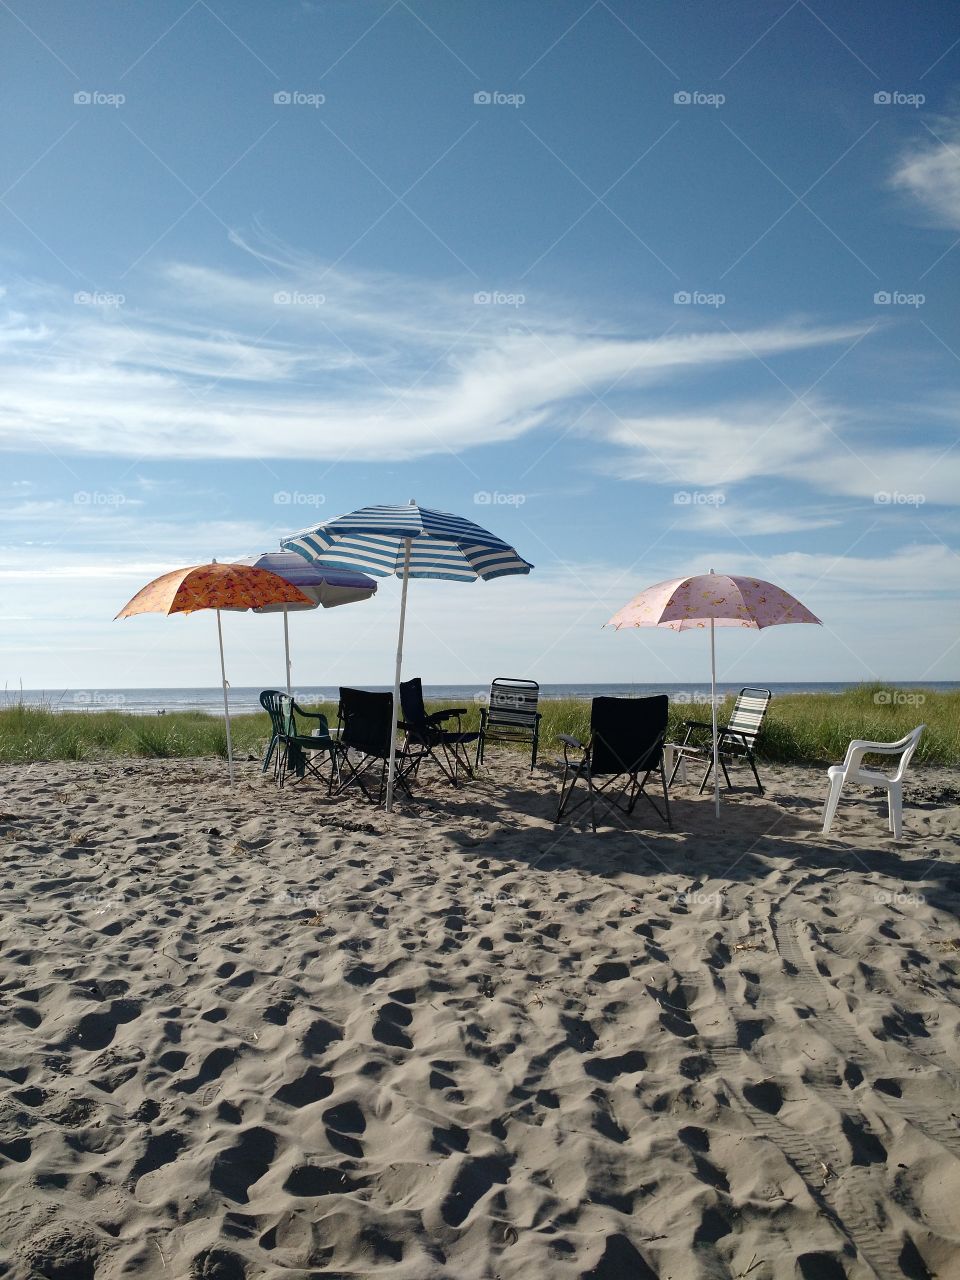 Beach Chairs. August 2015